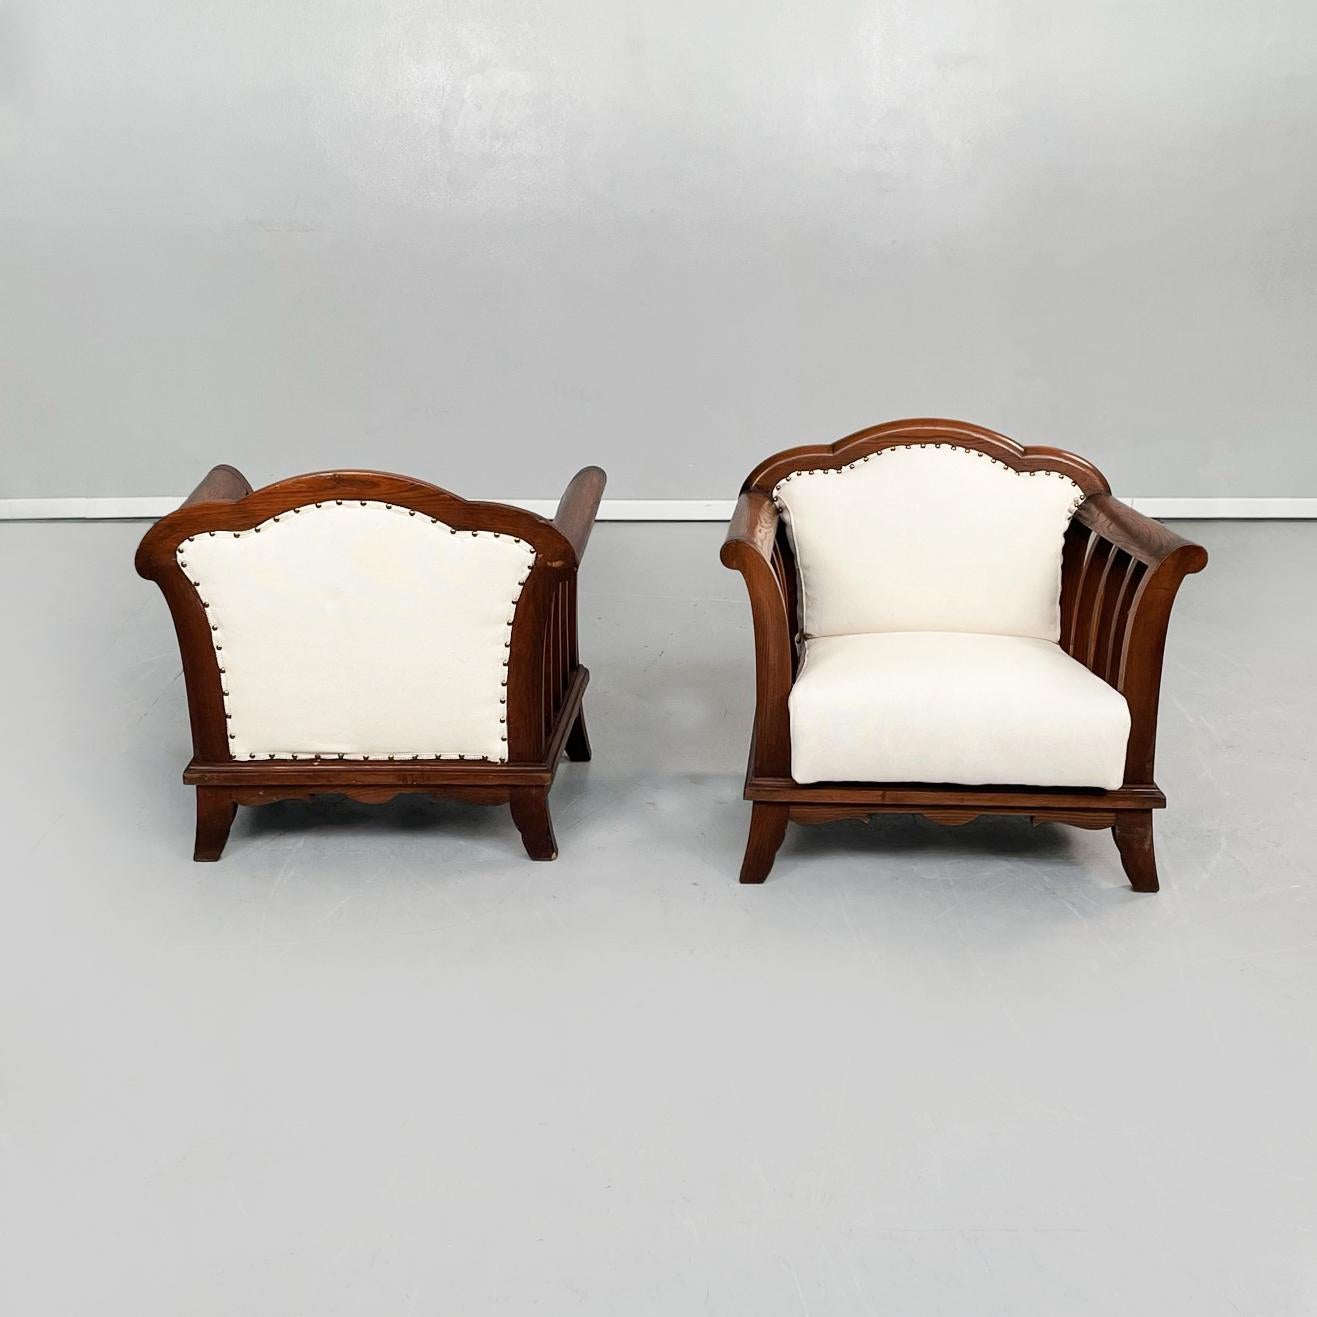 Moderne italienische Holzsessel mit weißem Stoff, 1940er Jahre
Satz von 2 Sesseln mit Holzstruktur. Der Sessel hat eine quadratische Sitzfläche und eine quadratische Rückenlehne mit 3 Halbkreisen auf der Oberseite, beide gepolstert und mit weißem